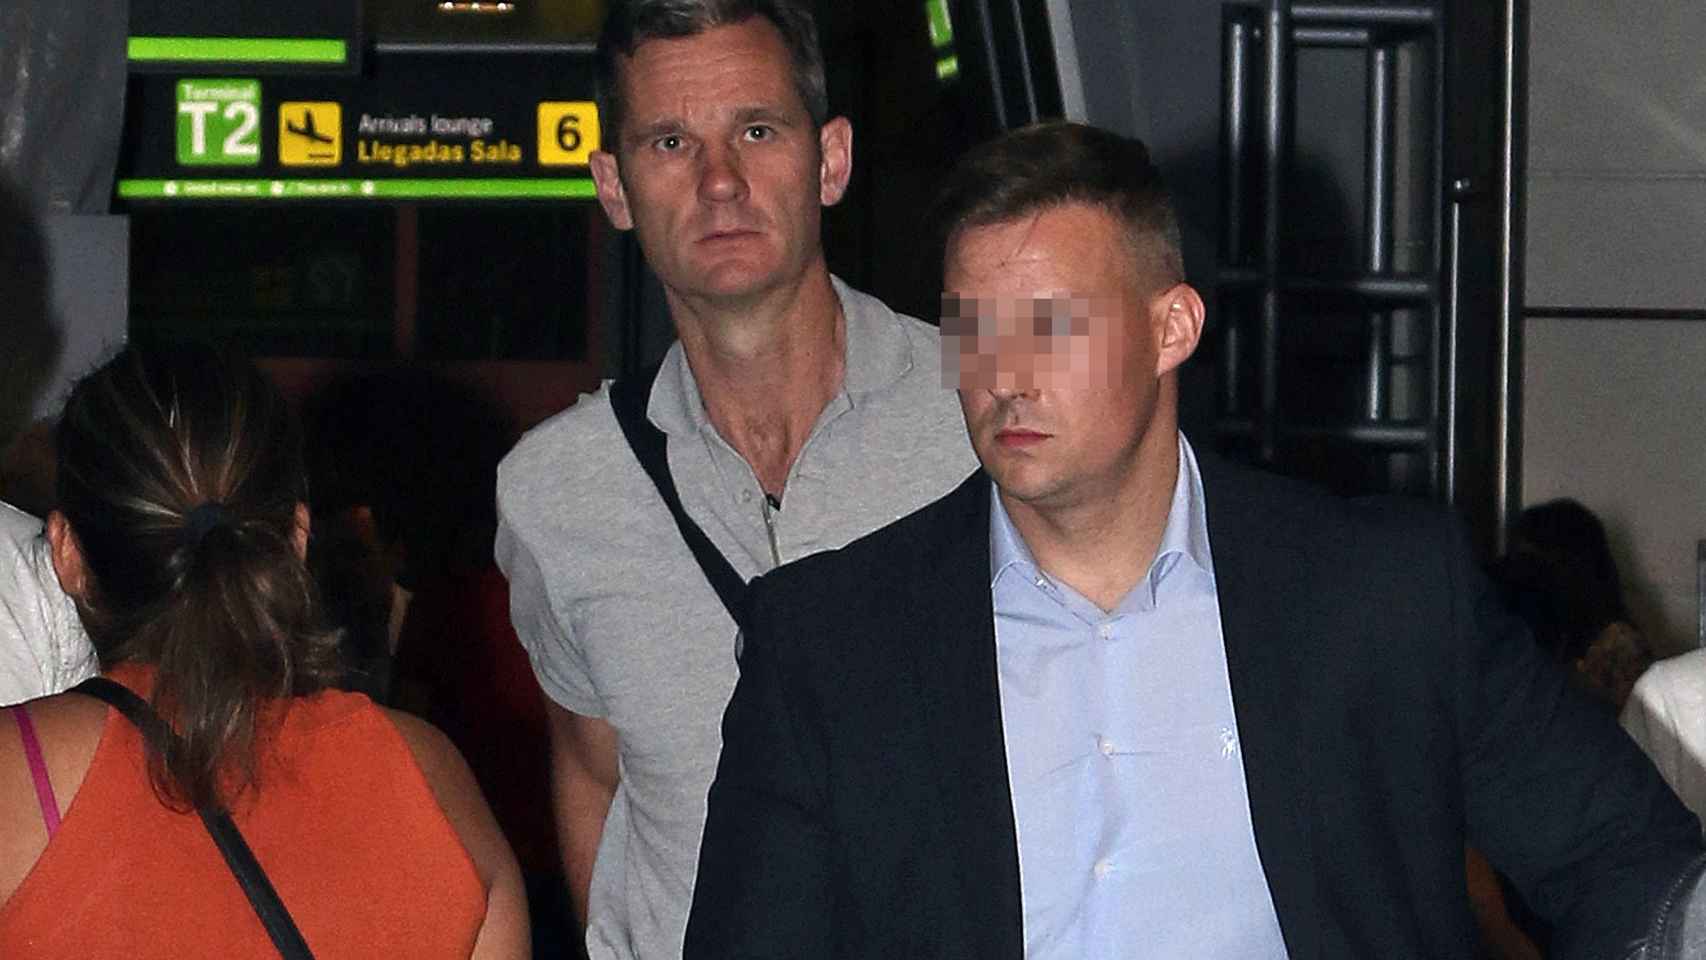 Urdangarin, en el aeropuerto, a su llegada a Madrid horas antes de ingresar en prisión.